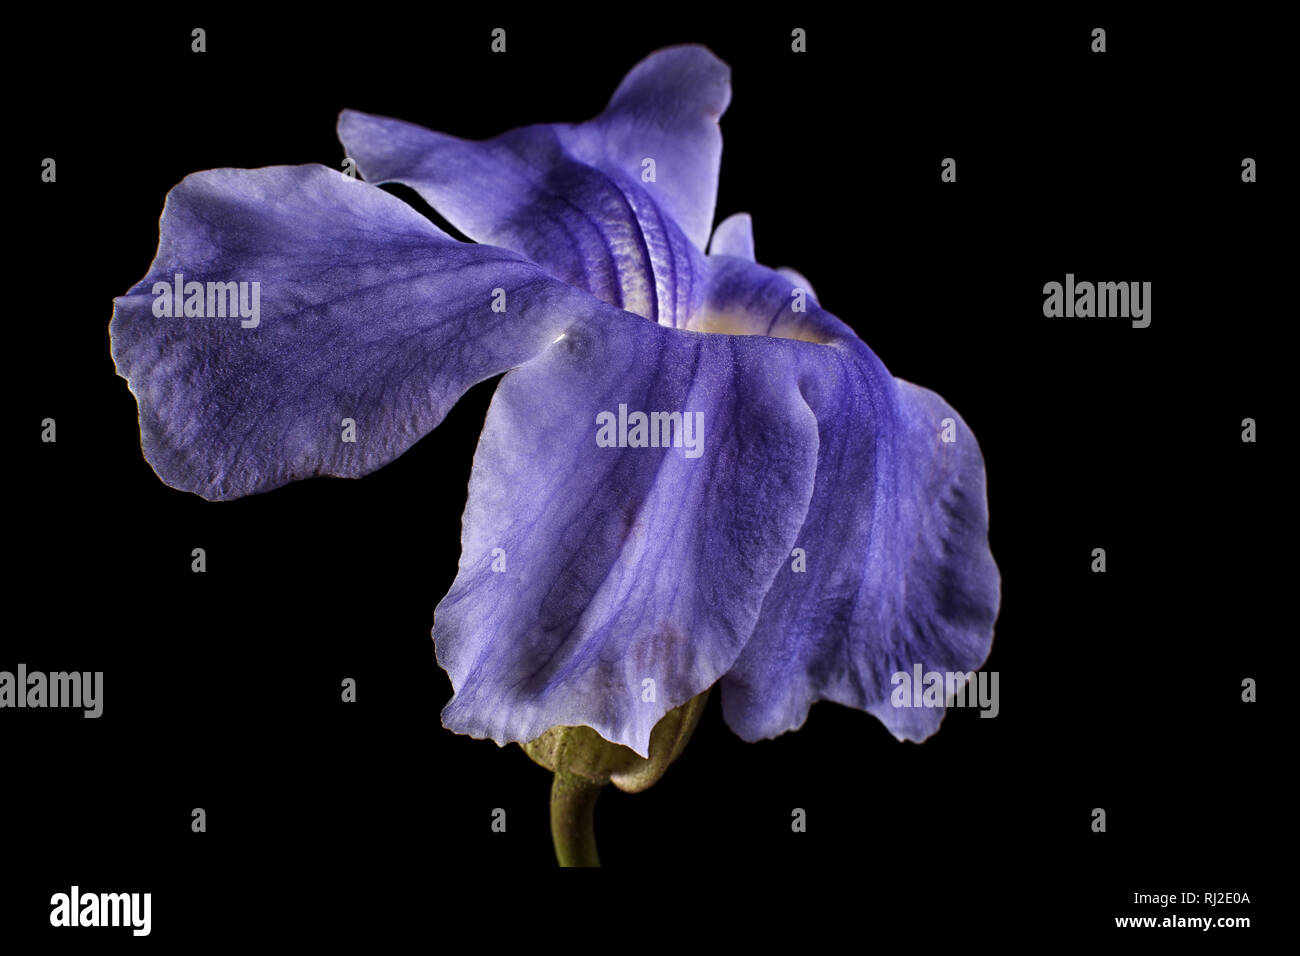 asarina flower closeup details Stock Photo